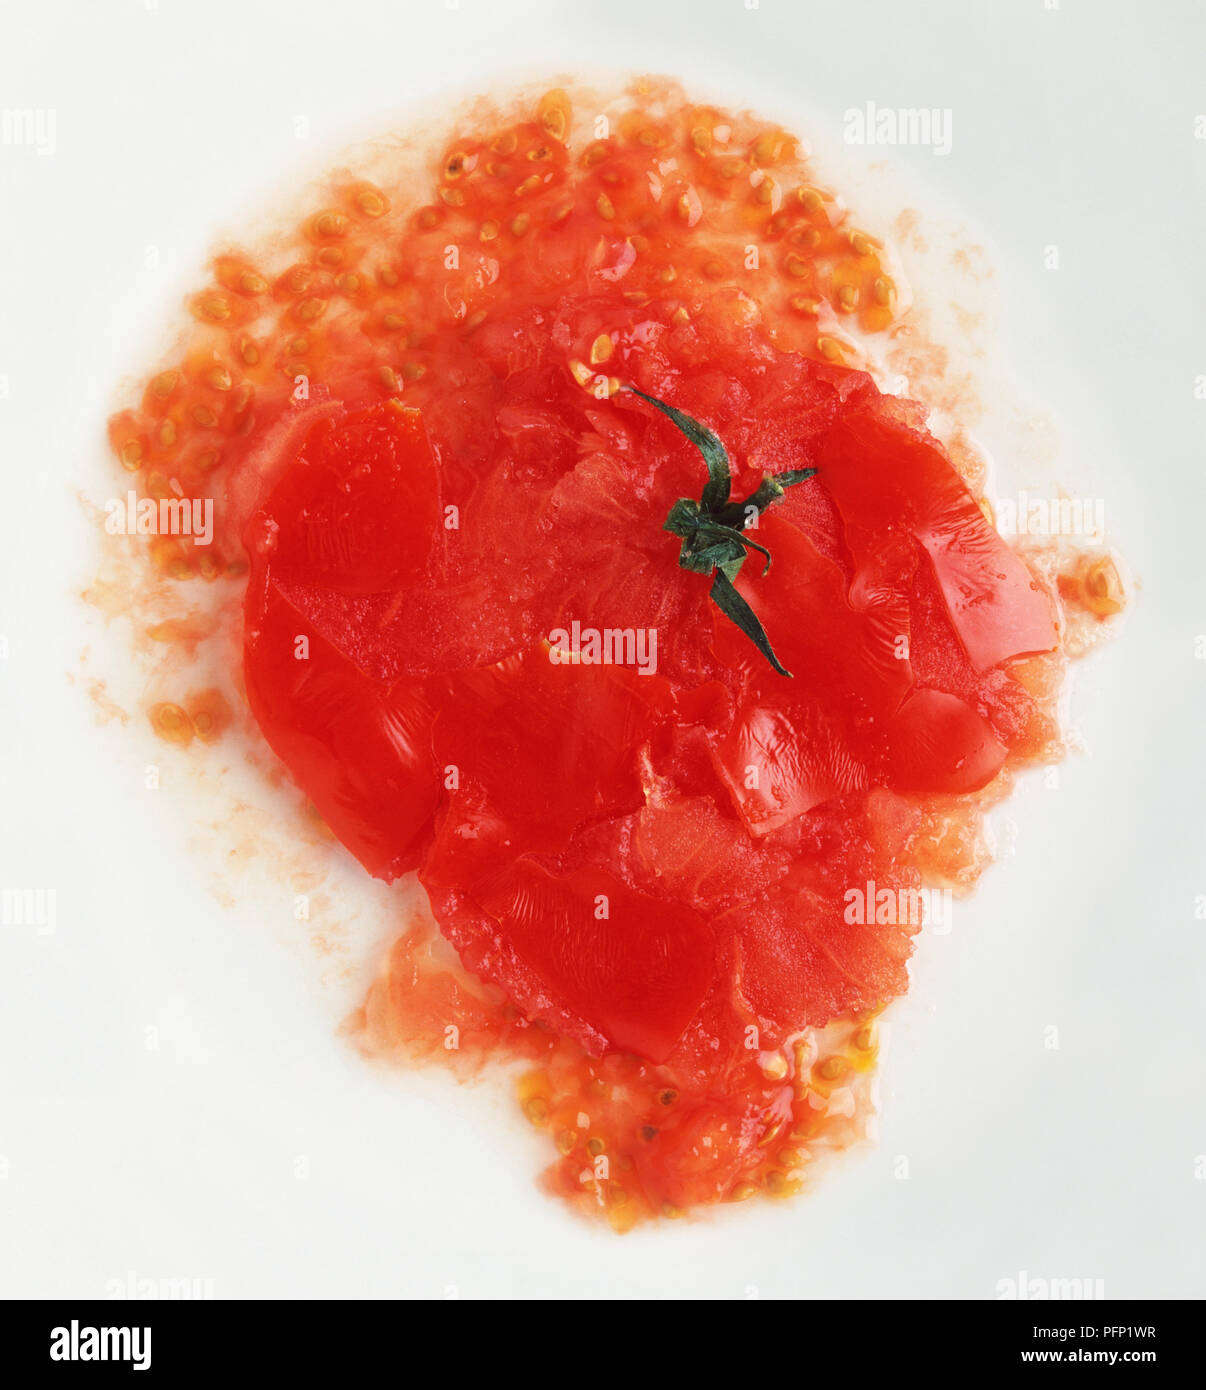 Pomodoro schiacciato su una piastra, vista da sopra Foto Stock